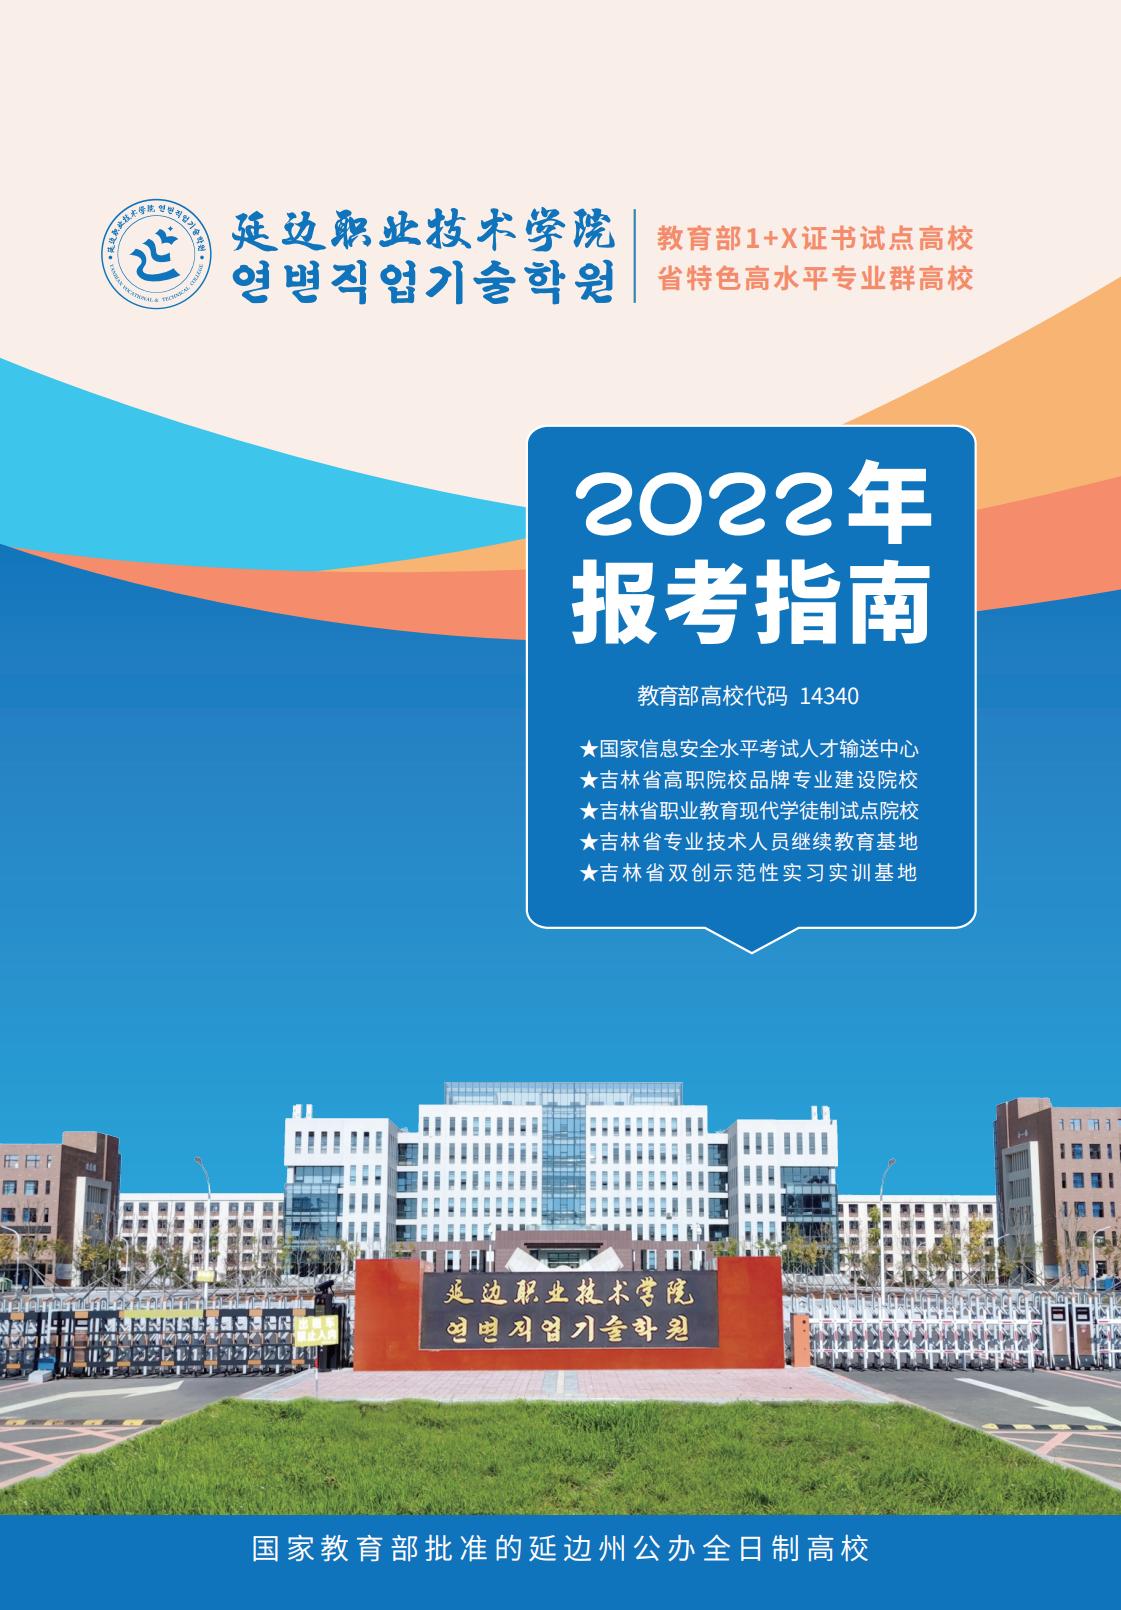 延边职业技术学院2022报考指南 预览版_00.jpg